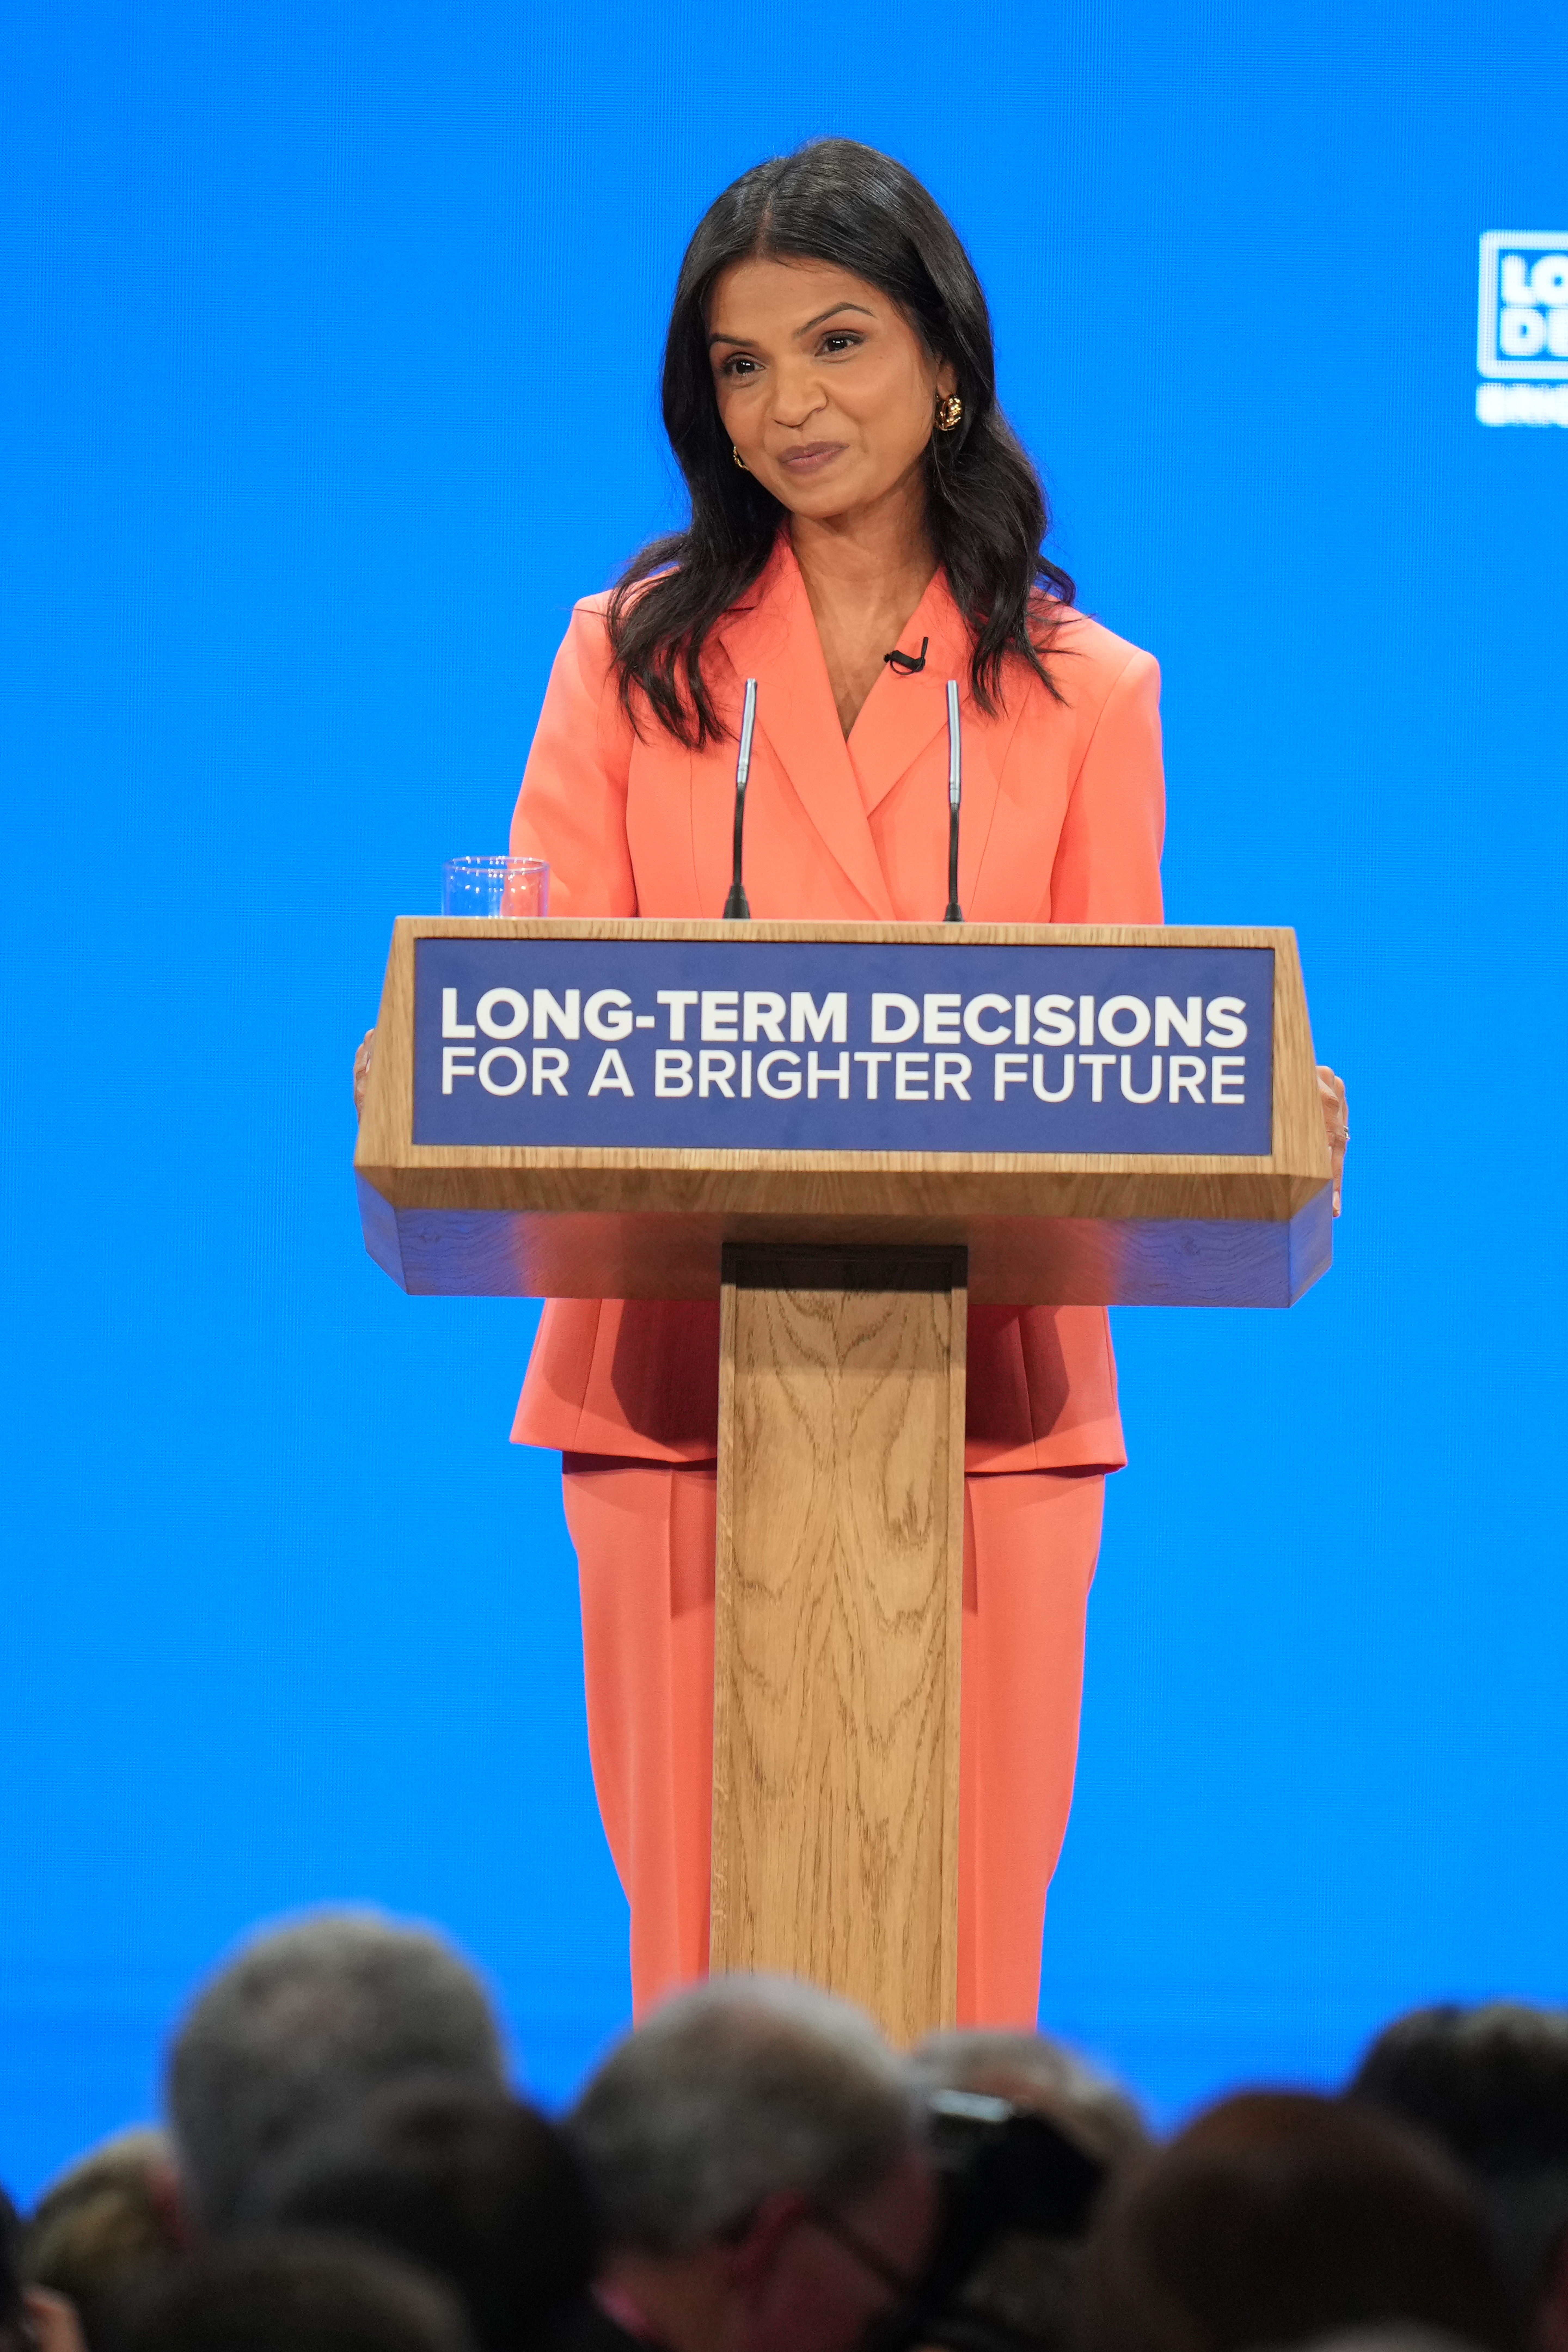 Die Partnerin des Premierministers würdigte ihren Ehemann, als sie auf der Tory-Konferenz eine Rede hielt